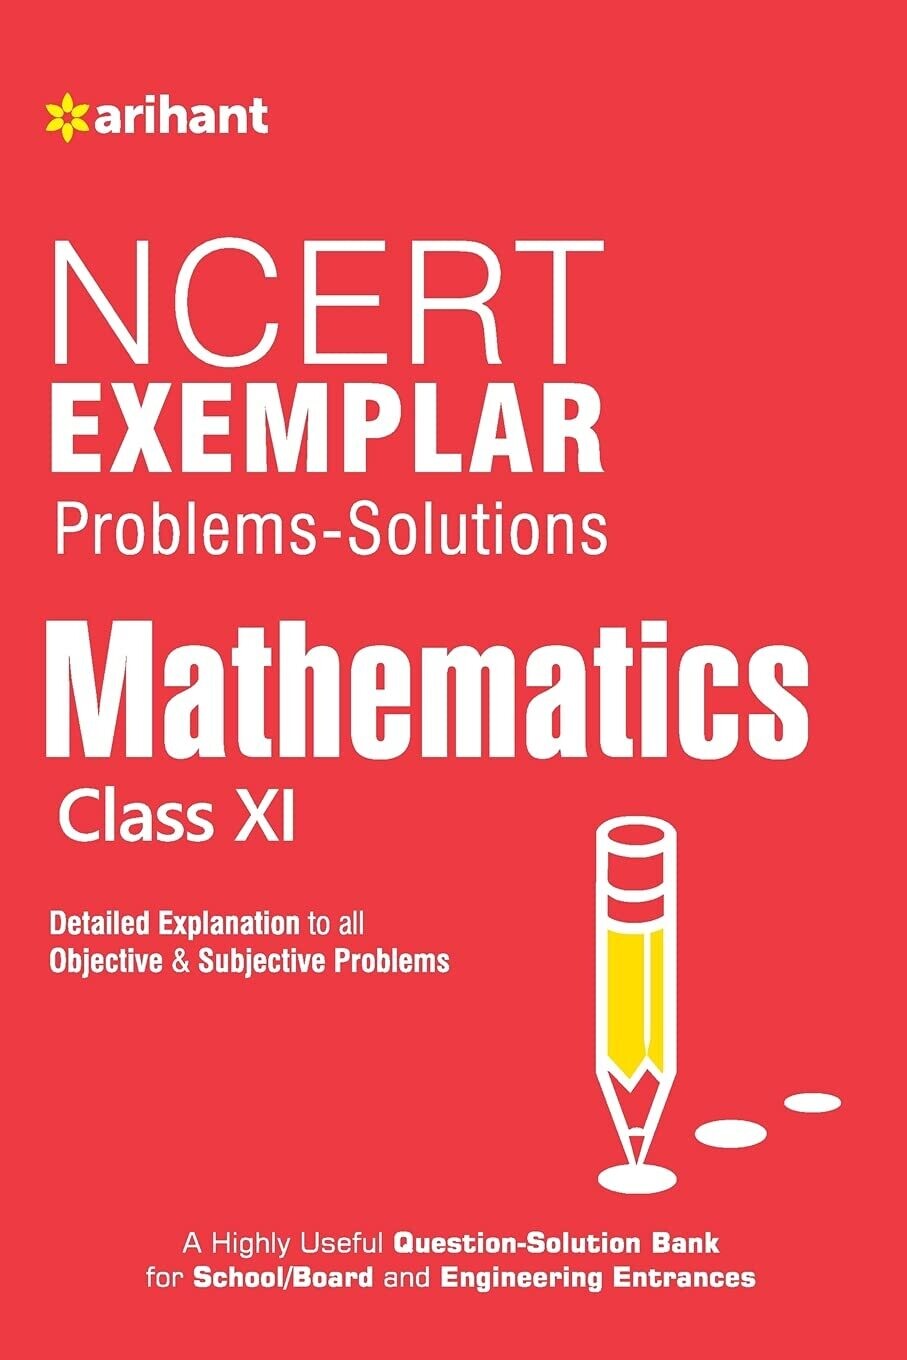 NCERT Exemplar Problems-Solutions MATHEMATICS class 11th by Arihant